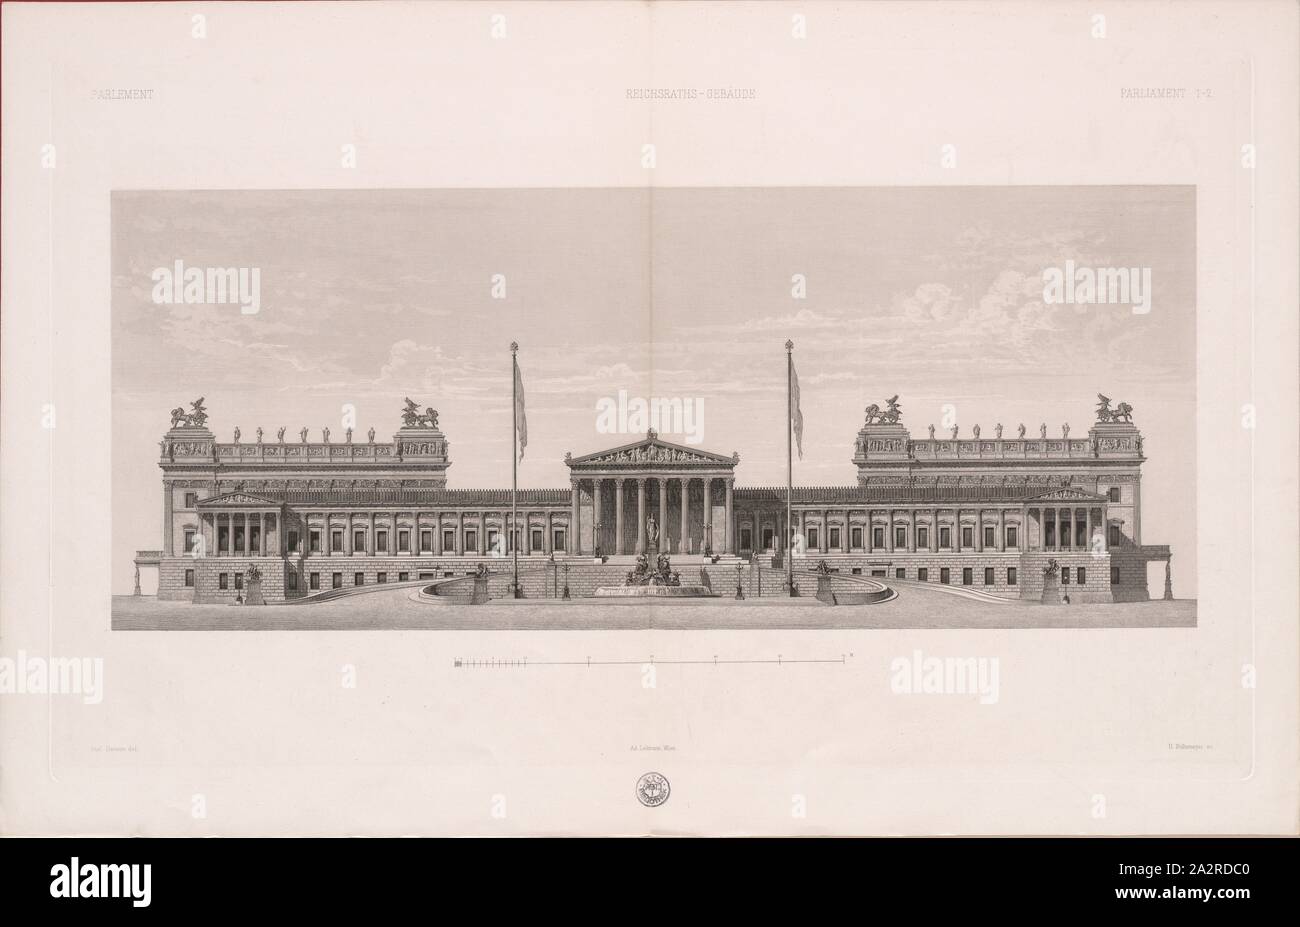 K.k. Reichsrathsgebäude in Vienna, Parliament building in Vienna, Fig. 1, 1885, [Eduard] van der Nüll u.a: Wiener Monumental-Bauten. Bd. 3. Wien: Lehmann, 1885 Stock Photo